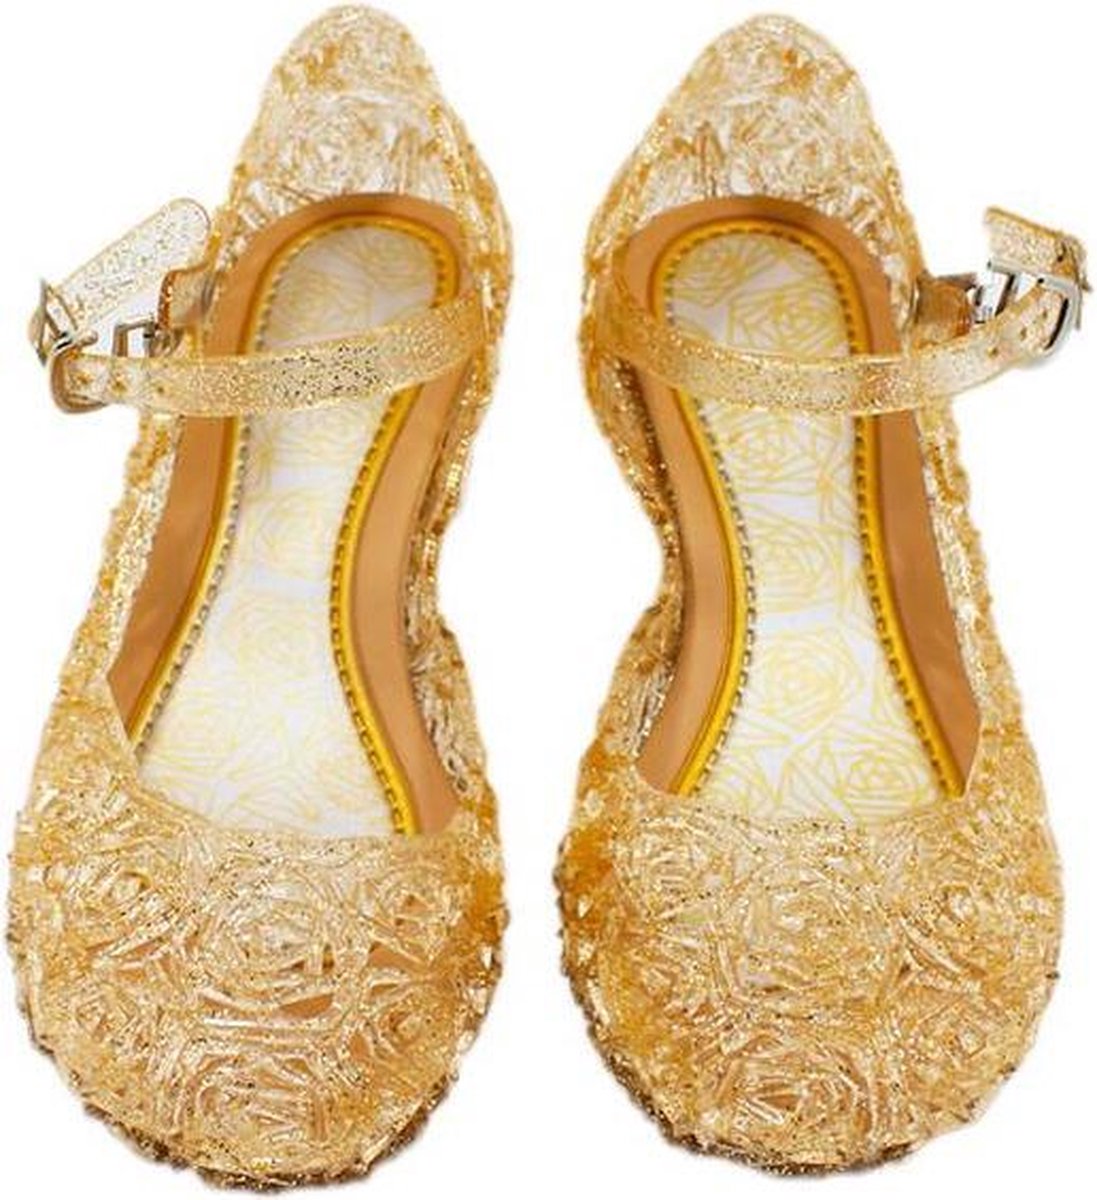 Prinsessen glitter schoenen met hak - Goud - Prinsessen - Verkleedschoenen - Frozen - Rapunzel - Doornroosje - Ariel - Assepoester -  Elsa - Anna - Jurk -  Maat 31 (valt als 29) Binnenzool: 18,5 cm